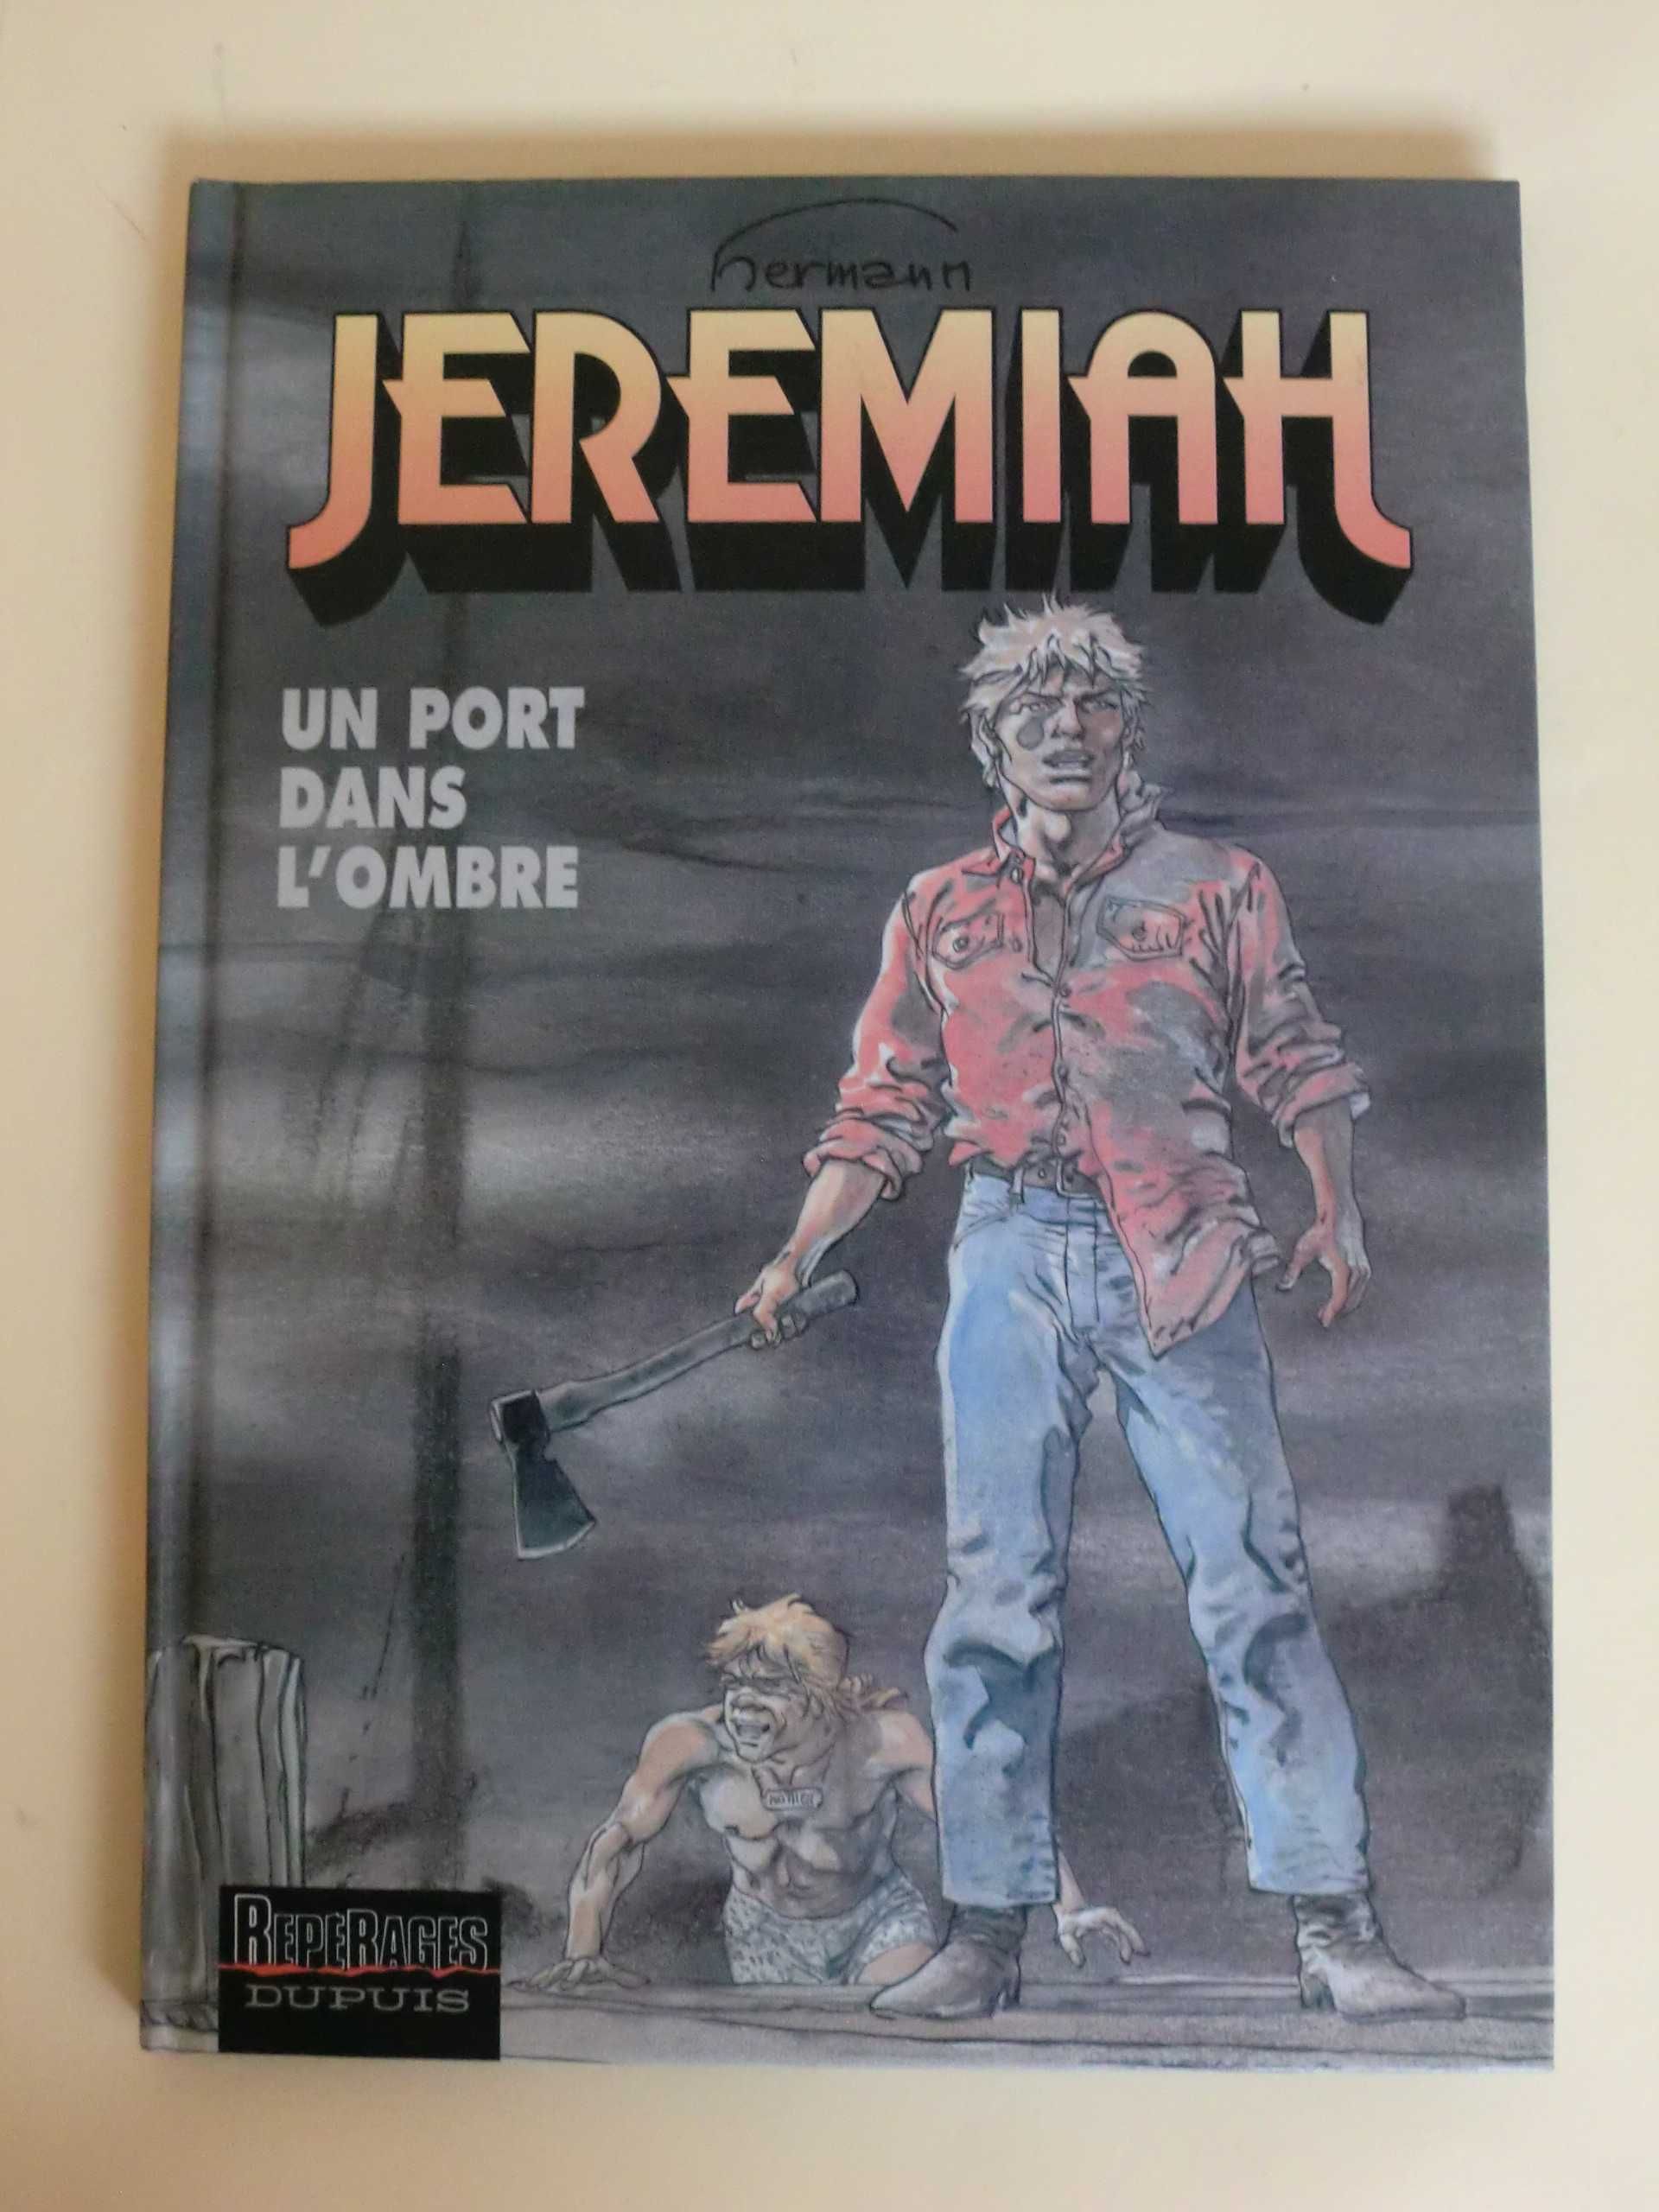 Jeremiah
Un port dans L´ombre
de Hermann